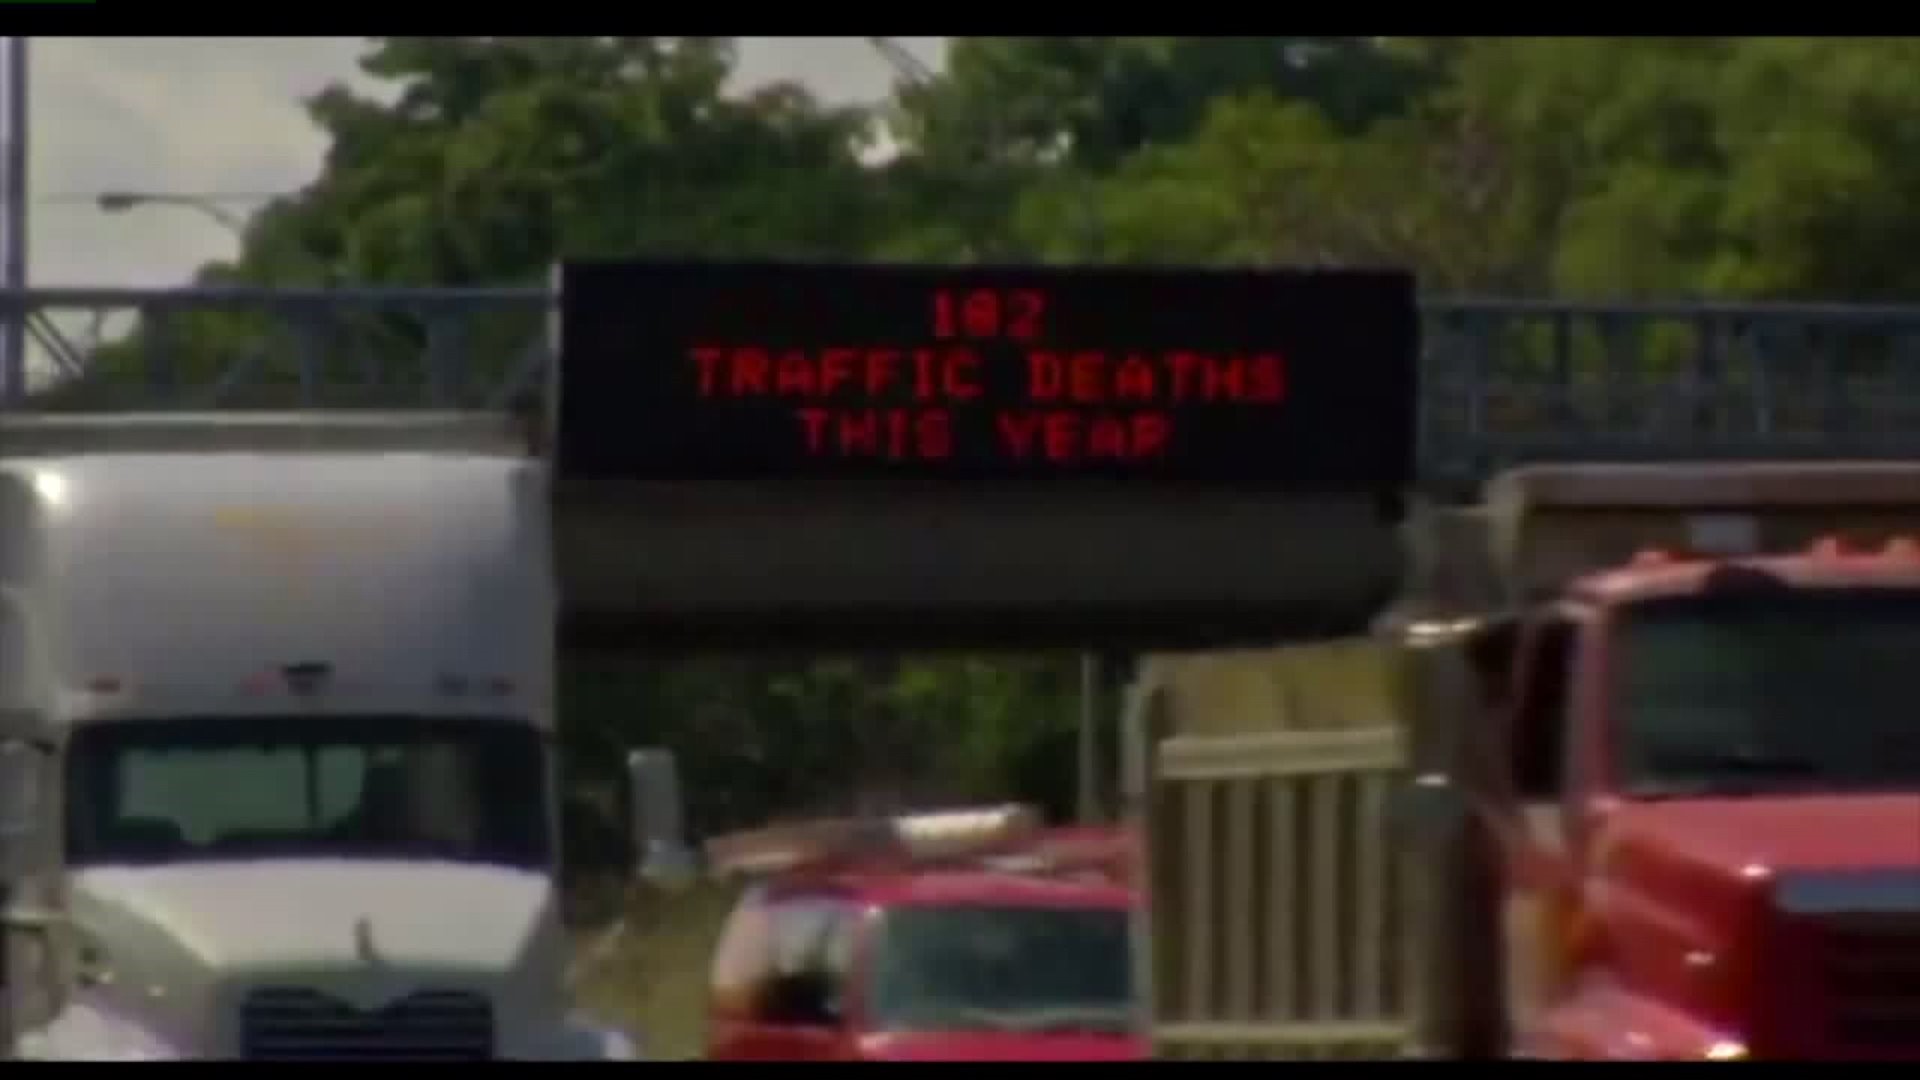 Traffic deaths in work zones